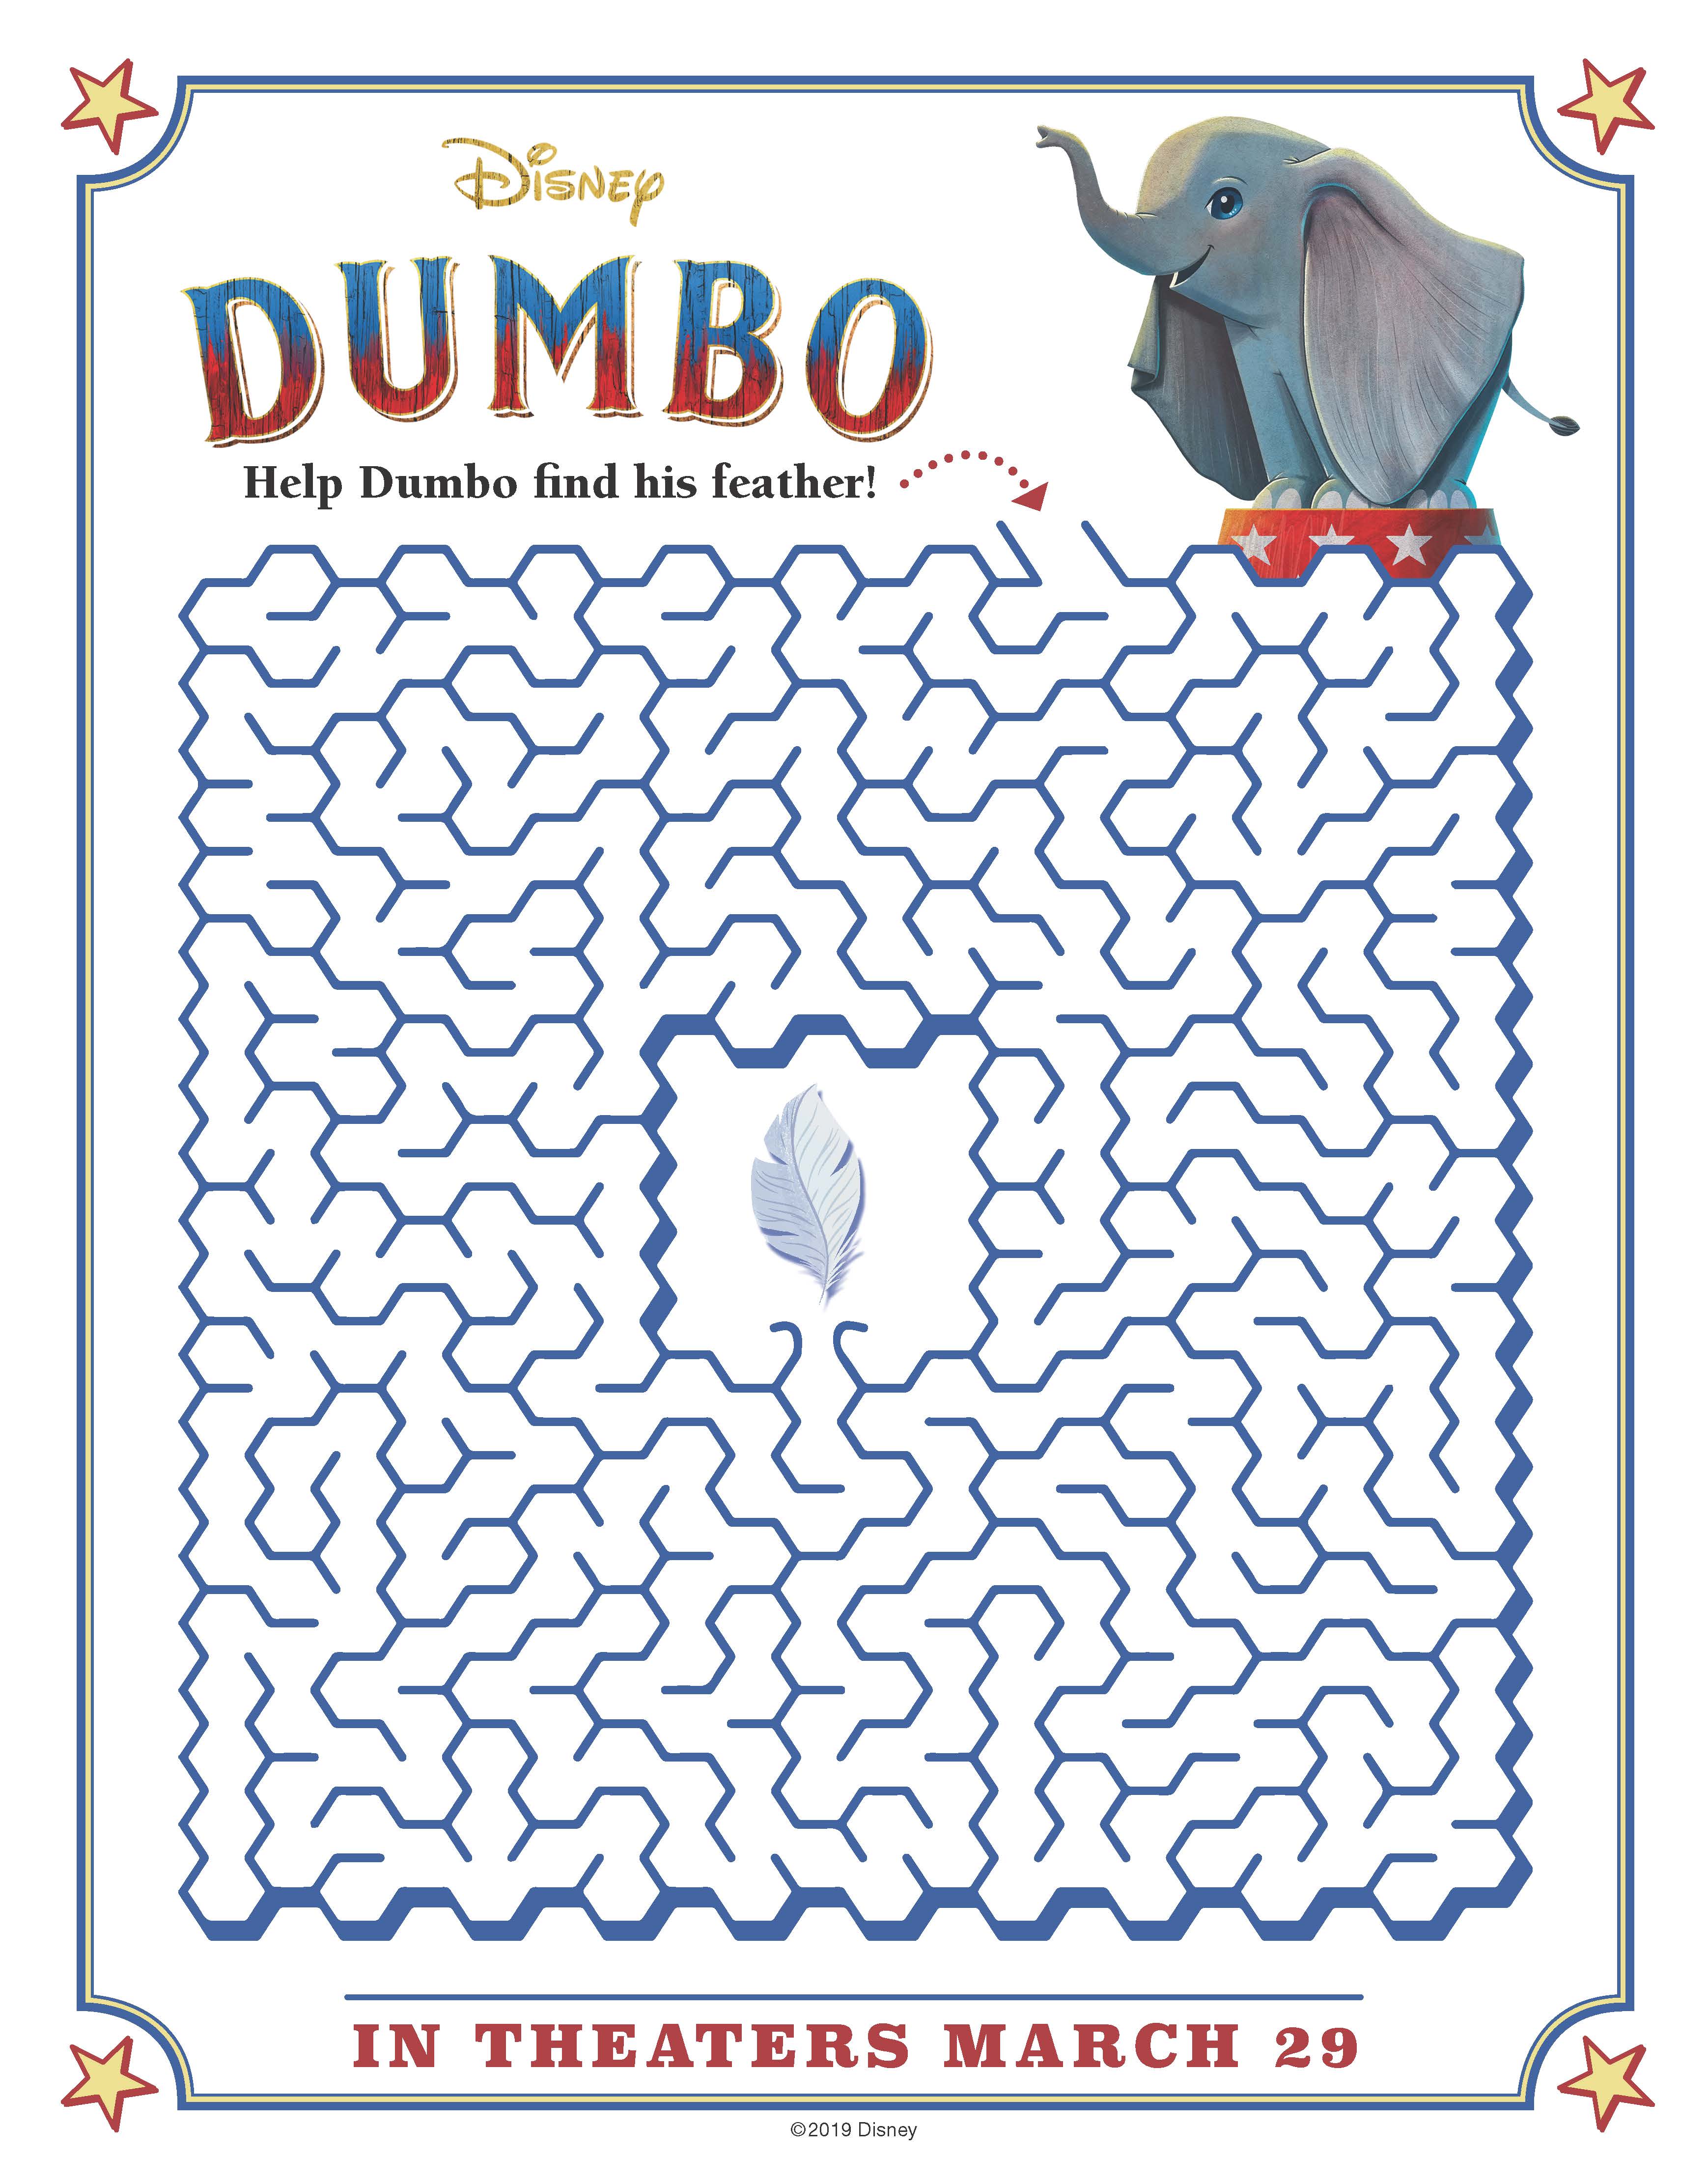 Free Printable Disney Dumbo Maze Activity Page #disney #dumbo #maze #freeprintable #printablemaze